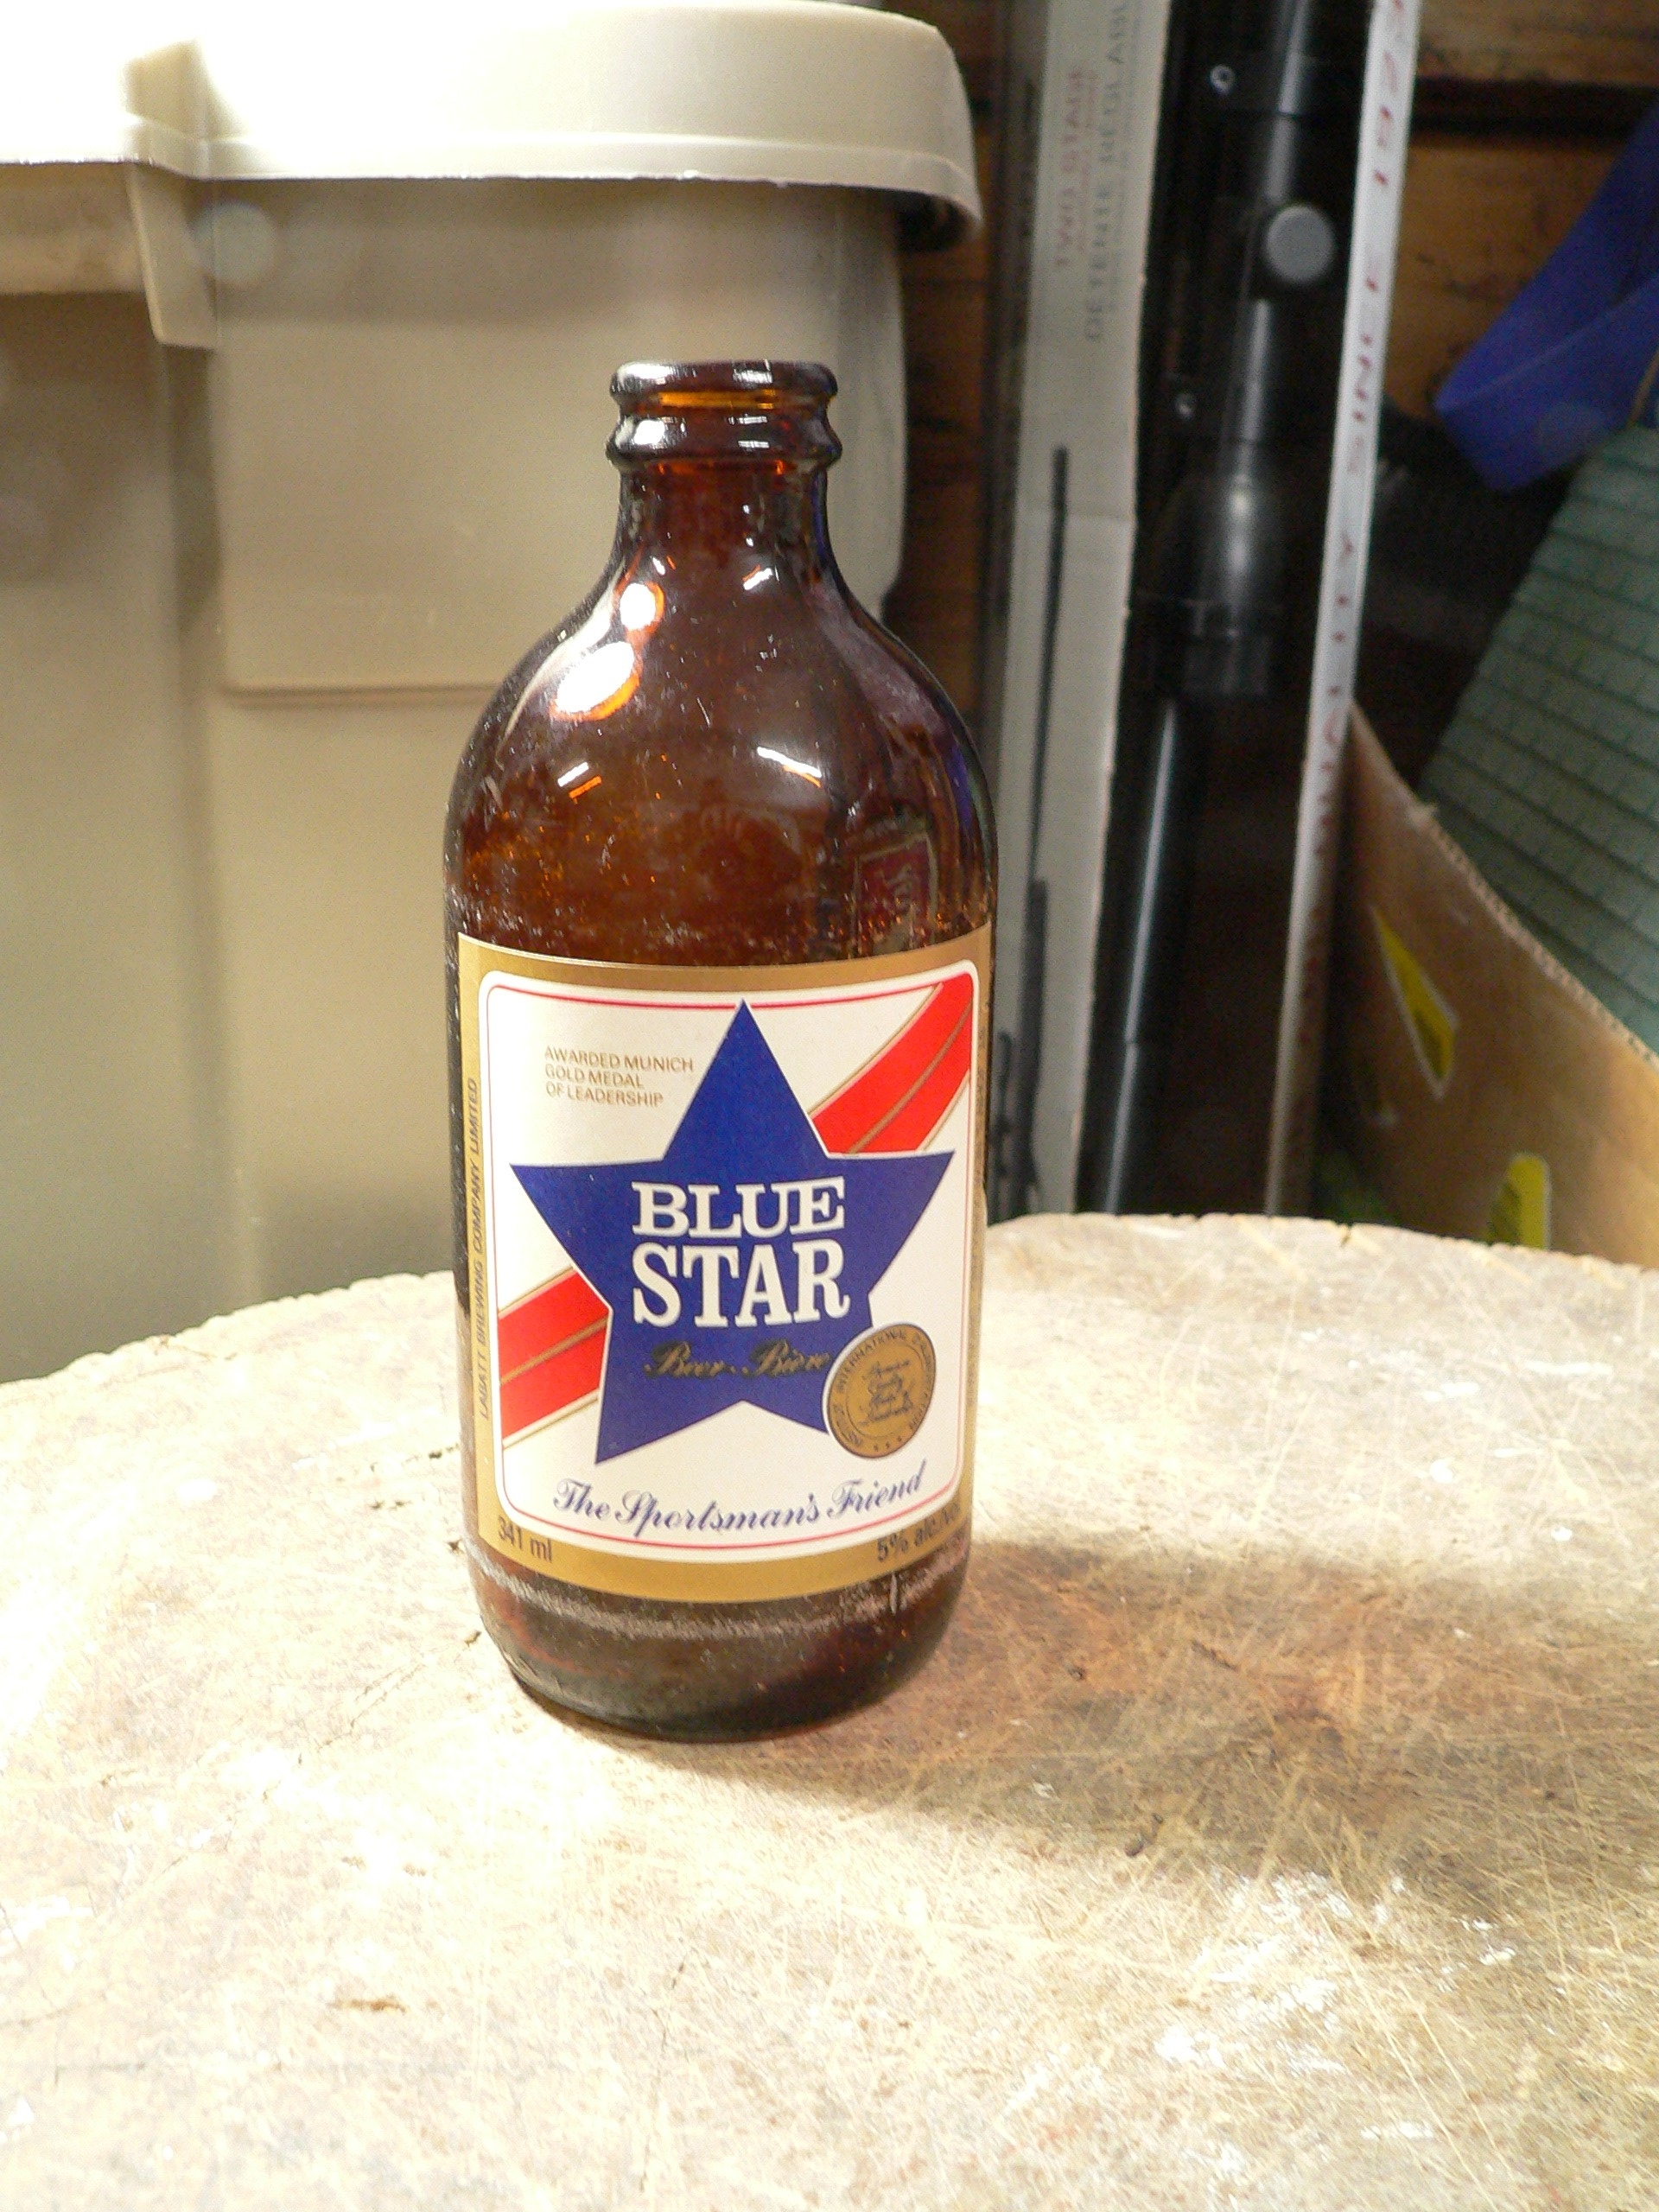 Bouteille bière vintage Blue star #9630.5